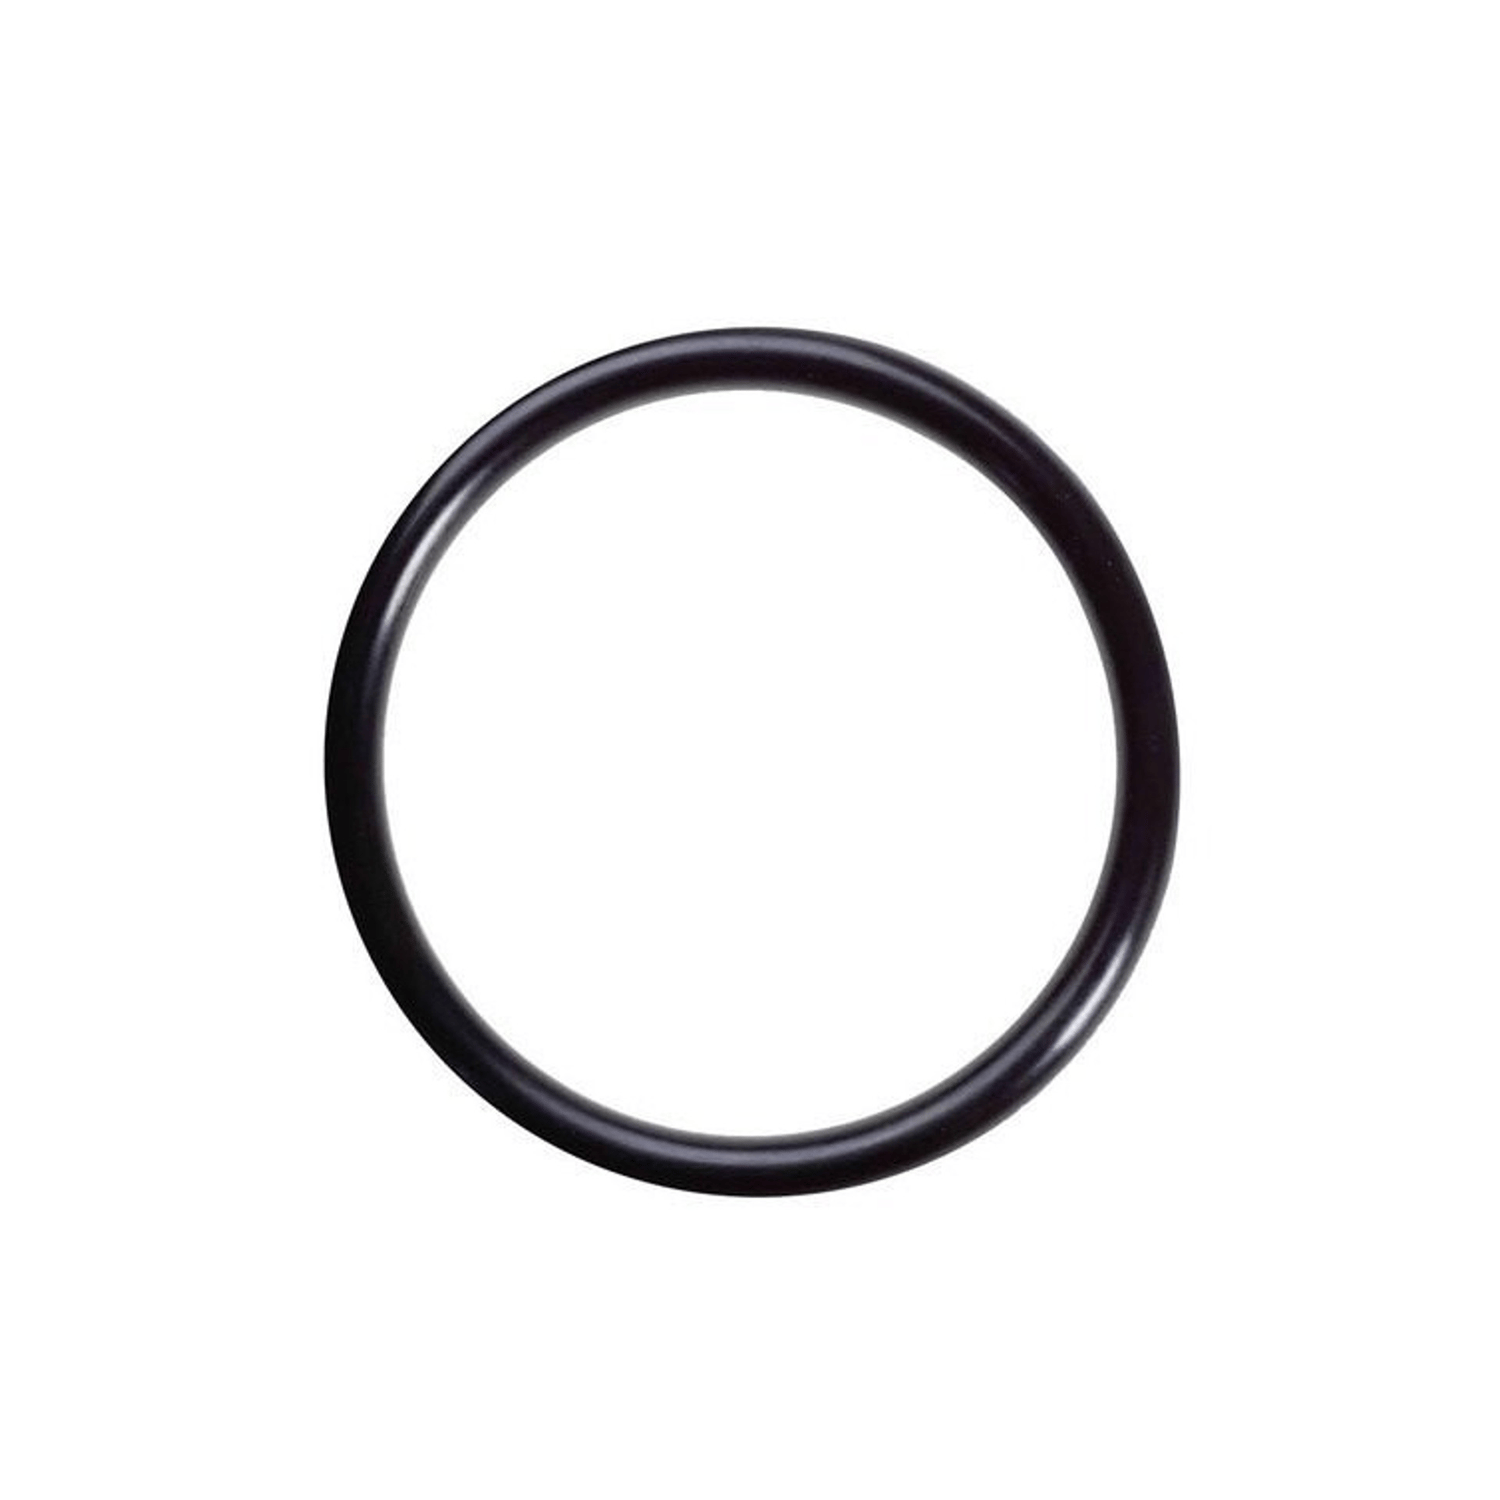 O-ring 7,8 x 1,9 mm 1 pz. gomma HNBR, per condizionatori d'aria R12 e R134a